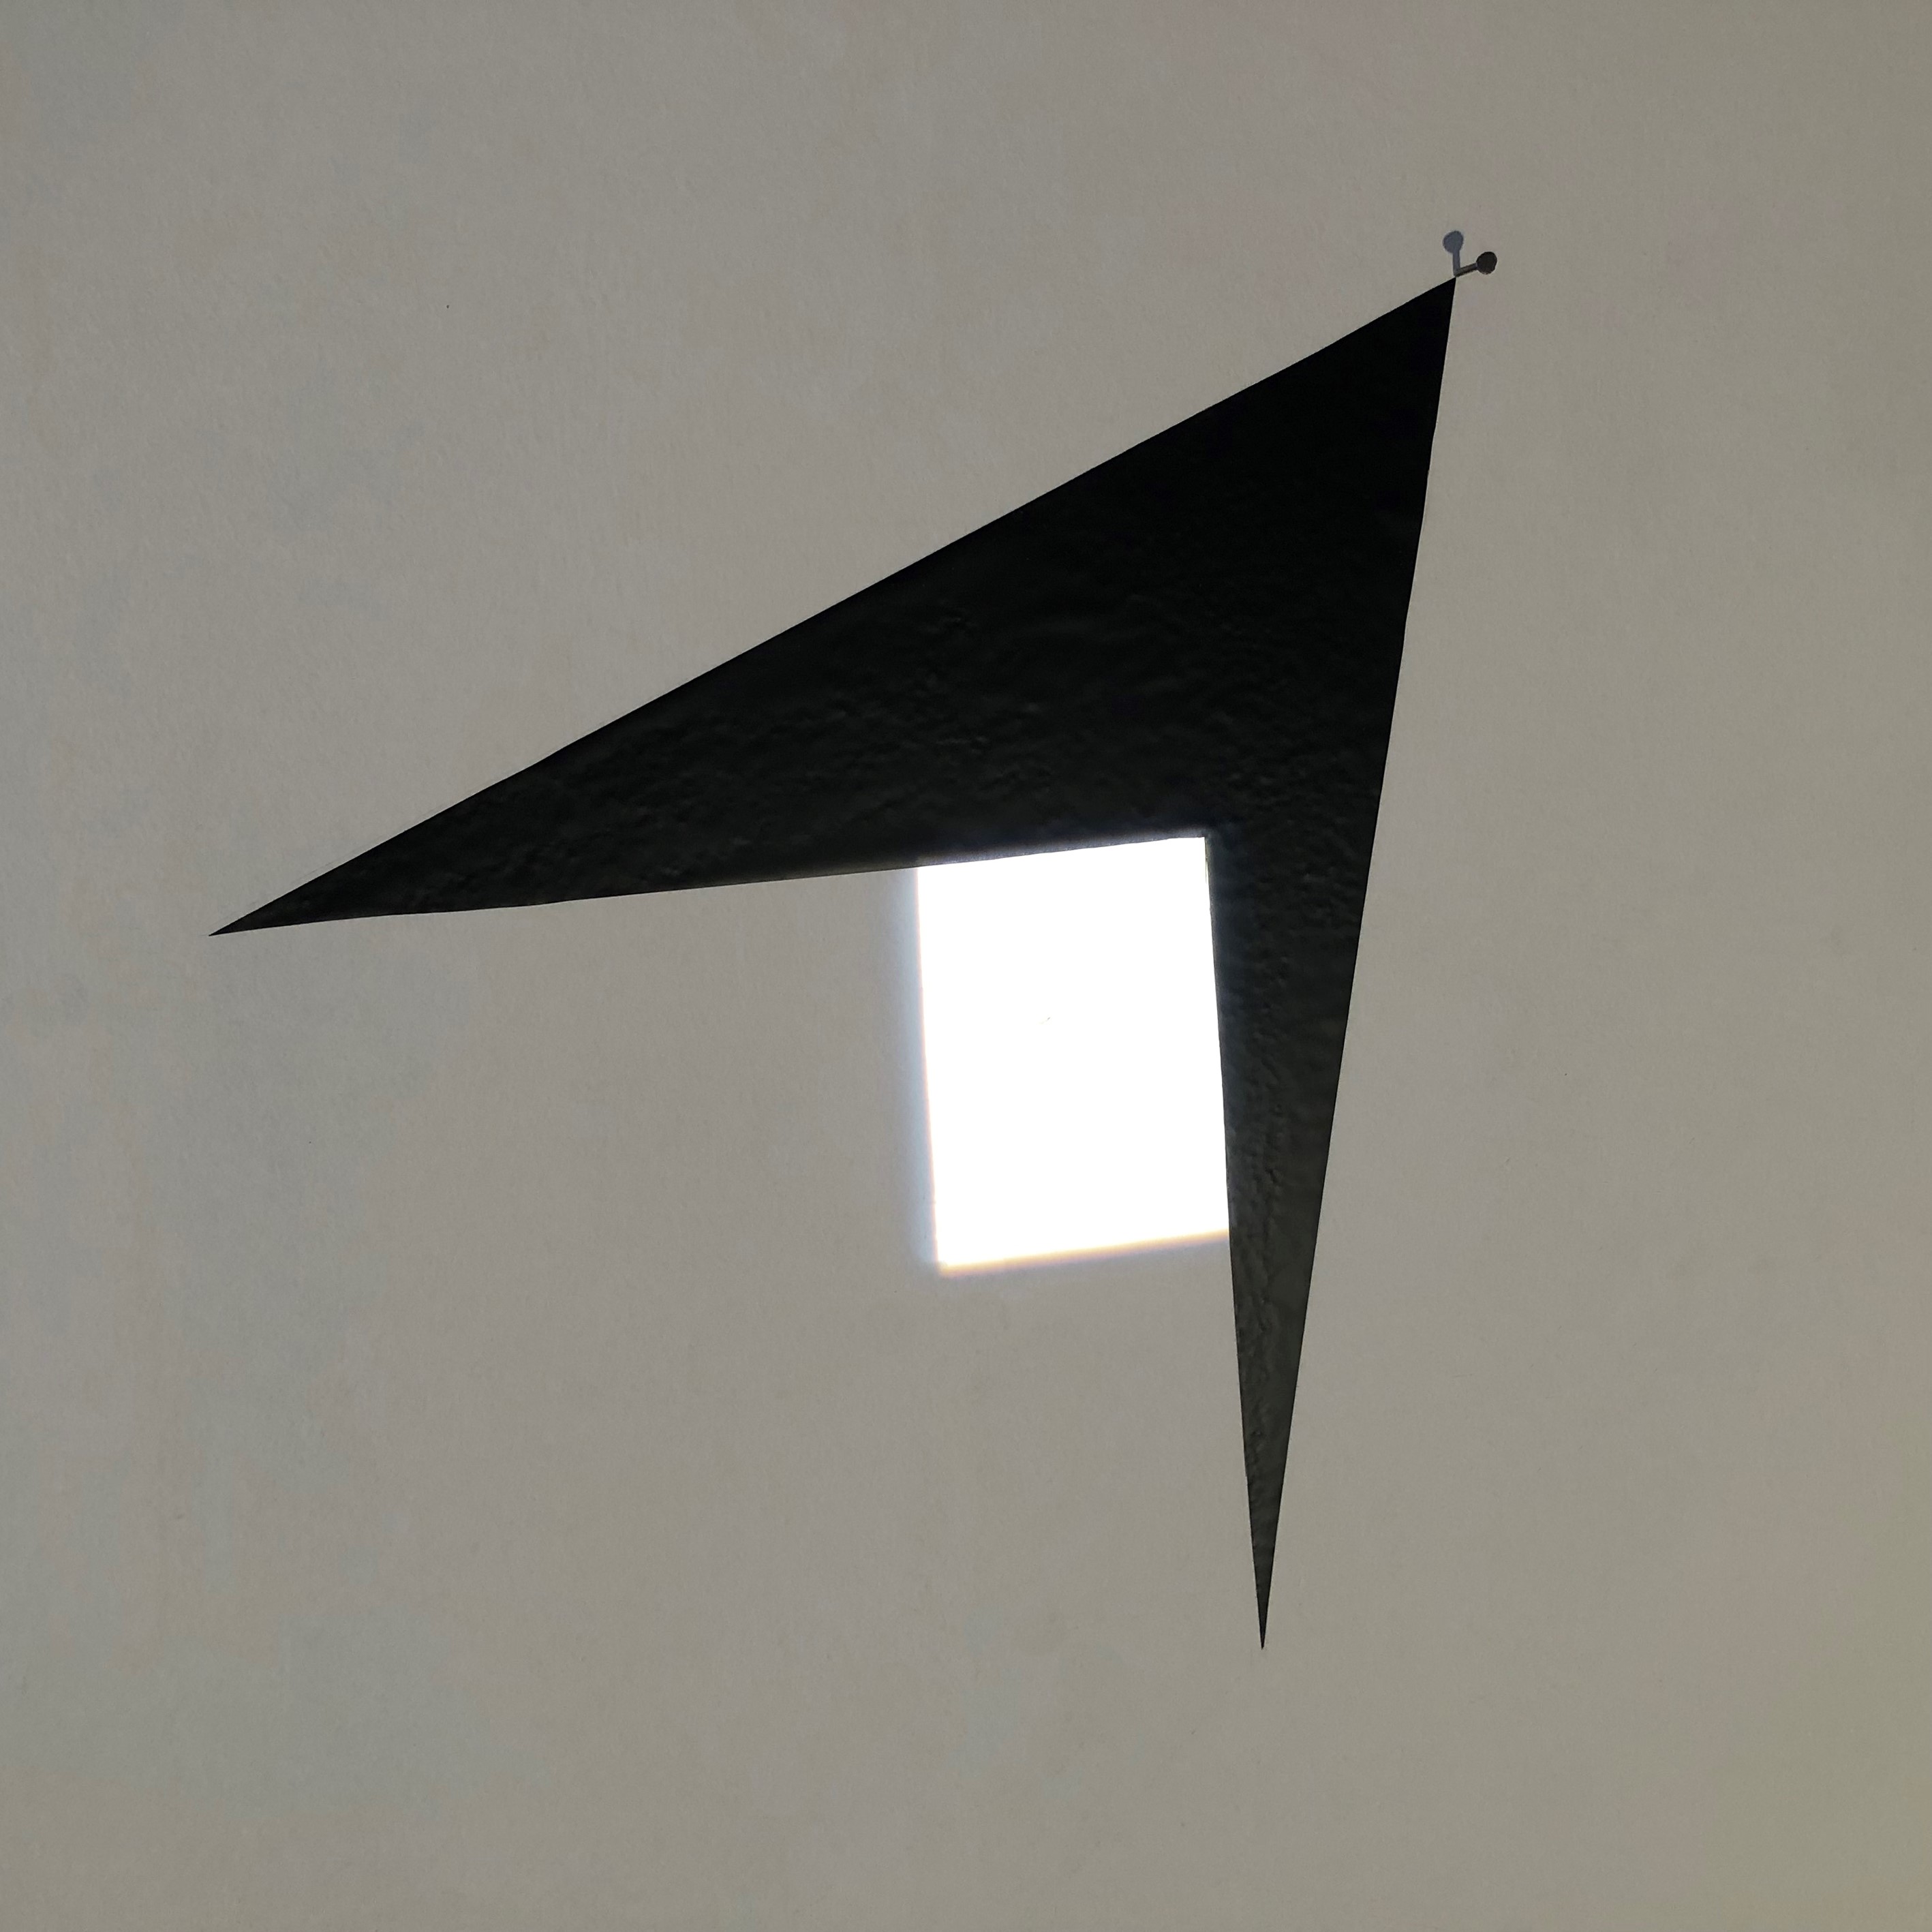 2. Goran Petercol,Umanjeno prvo, 2021., projekcija svjetla, samoljepljiva folija, čavao na zidu